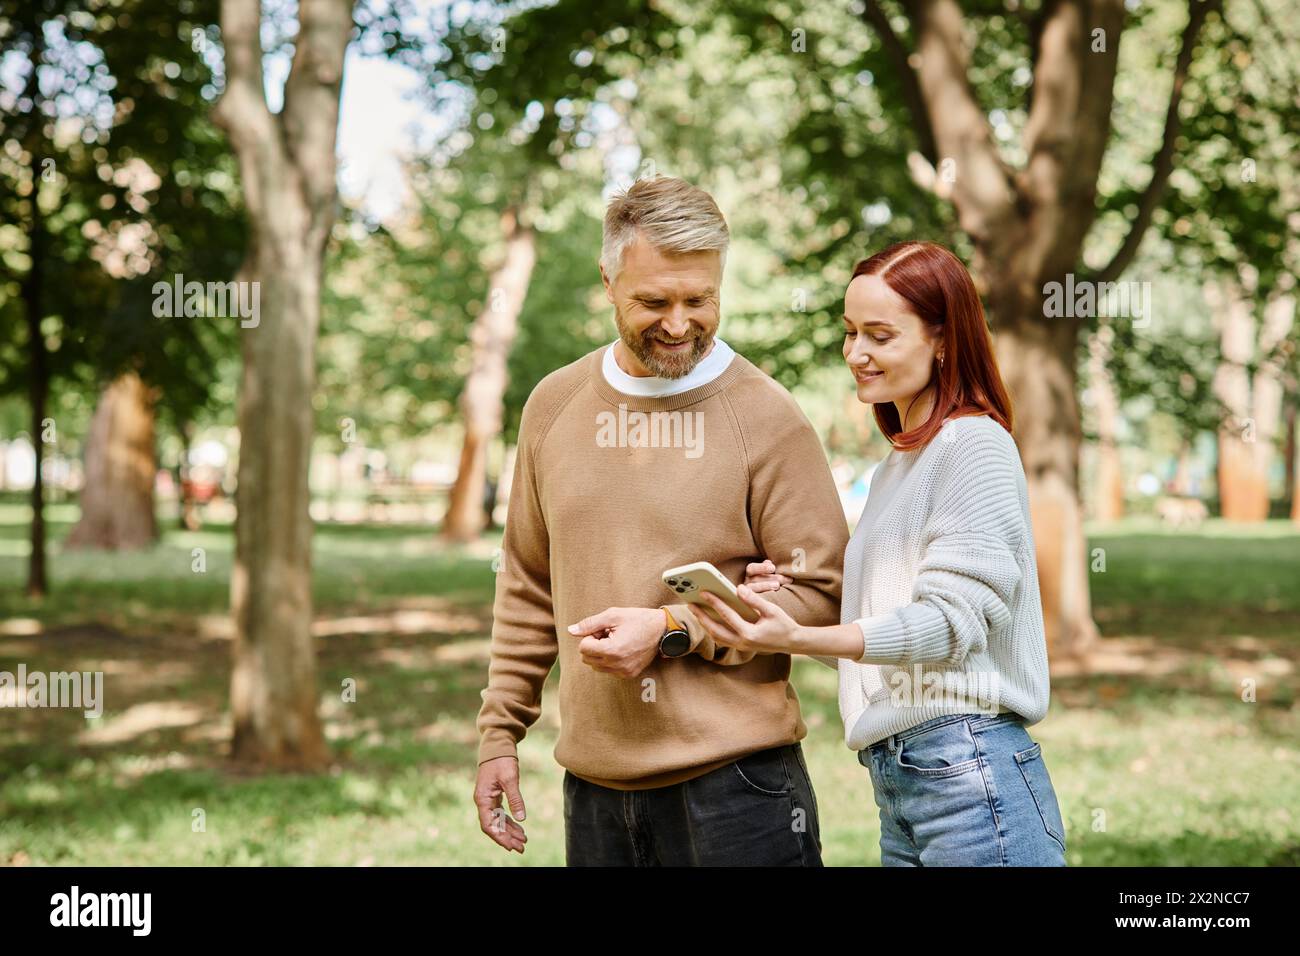 Ein Mann und eine Frau in lässiger Kleidung, die in einem friedlichen Park spazieren gehen. Stockfoto